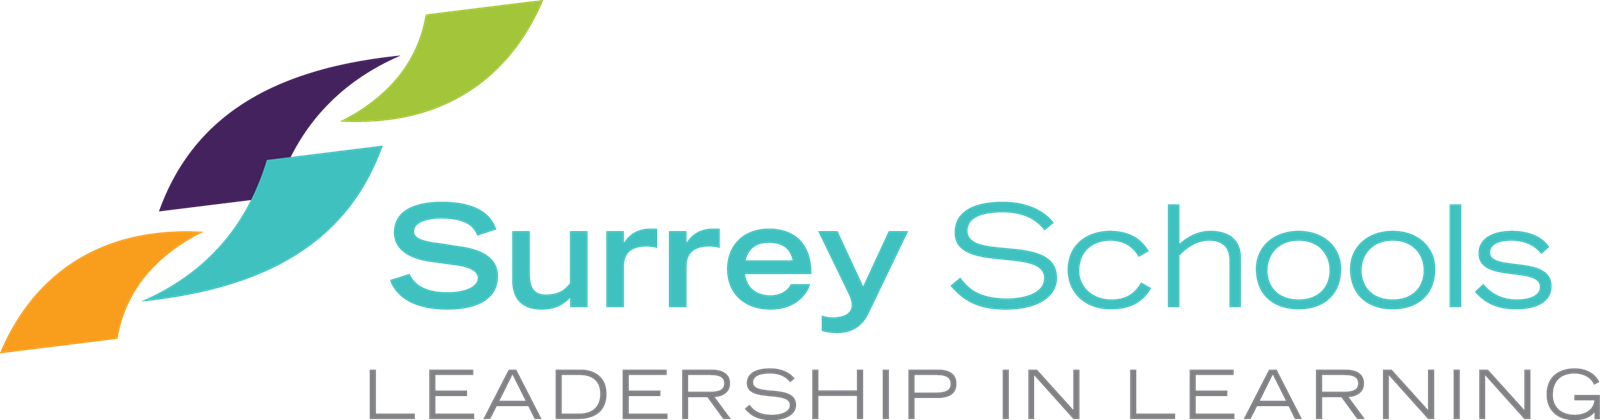 surrey-schools-logo1.png